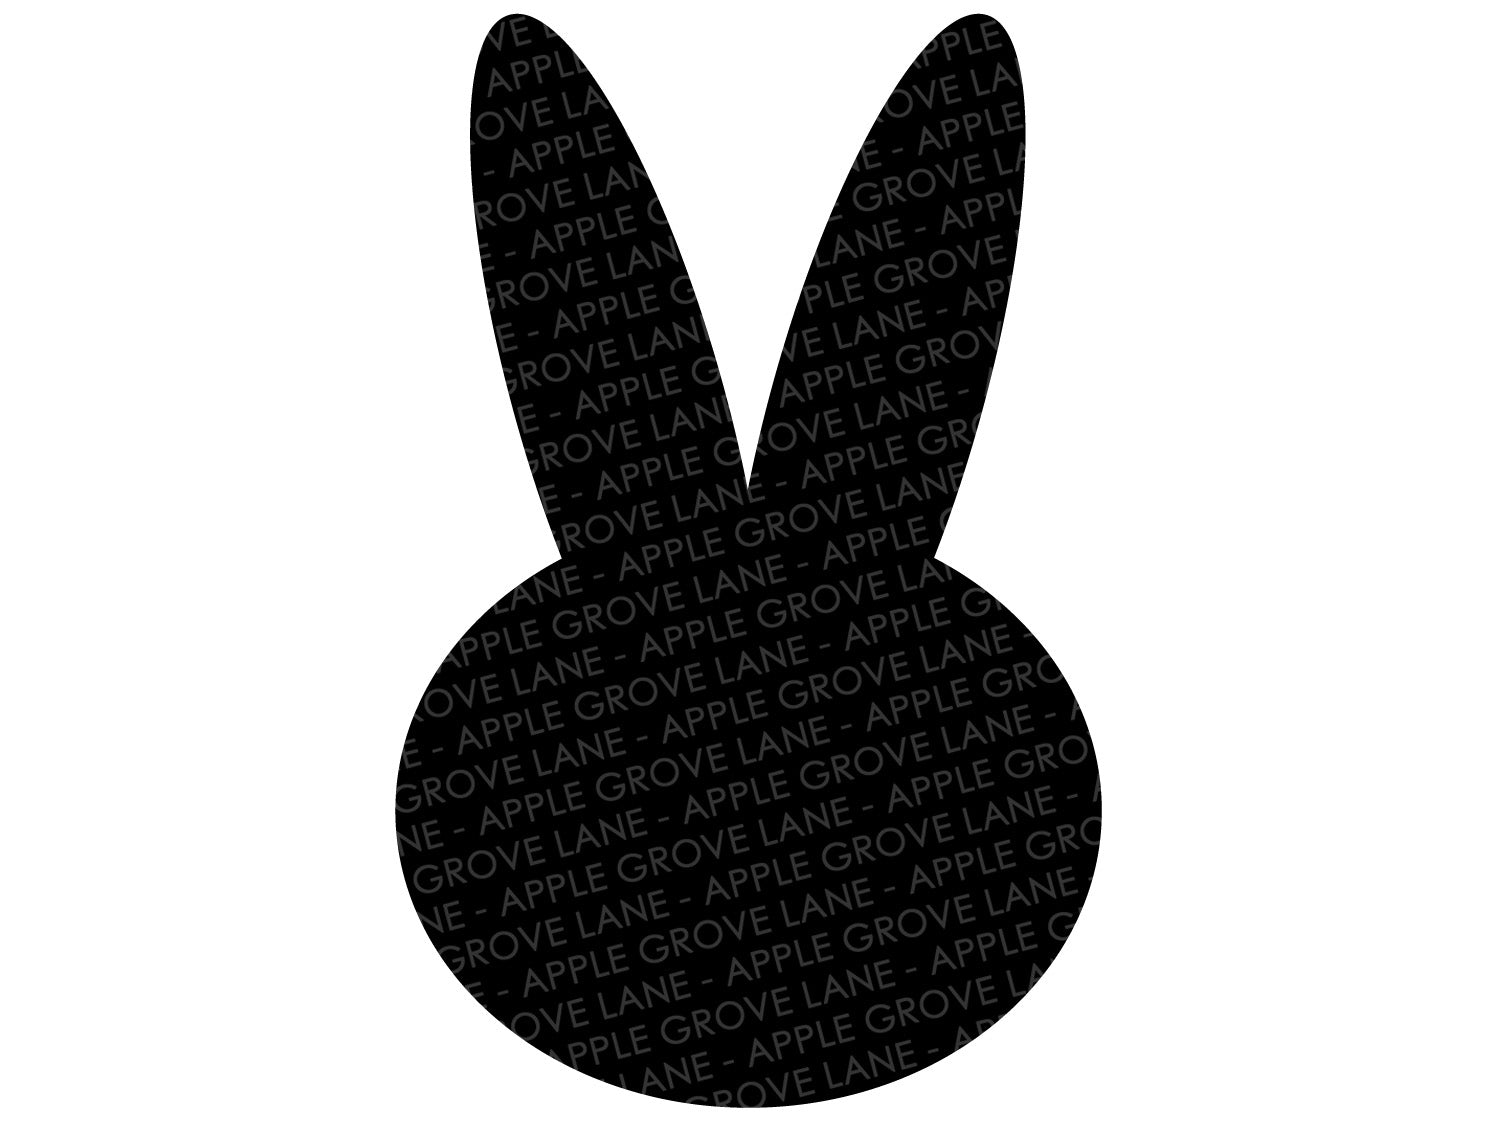 Bunny Head Svg - Easter Bunny Svg - Rabbit Svg - Easter Svg - Rabbit Outline Svg - Bunny Outline Svg - Easter Shirt Svg - Svg Eps Dxf Png